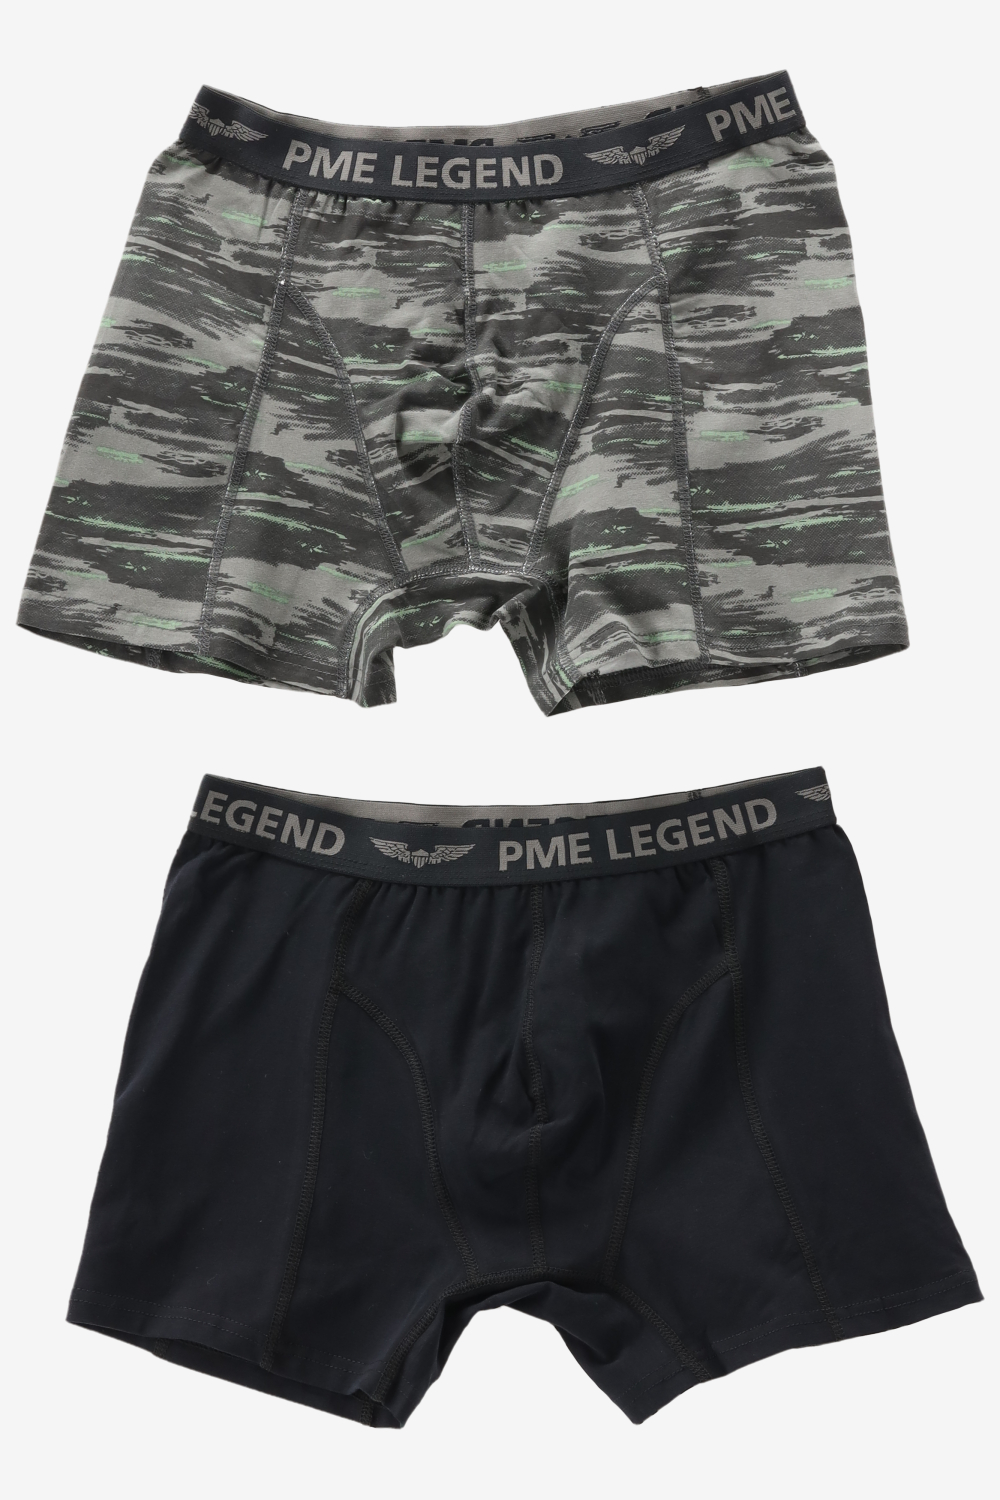 Pme legend underwear maat XL